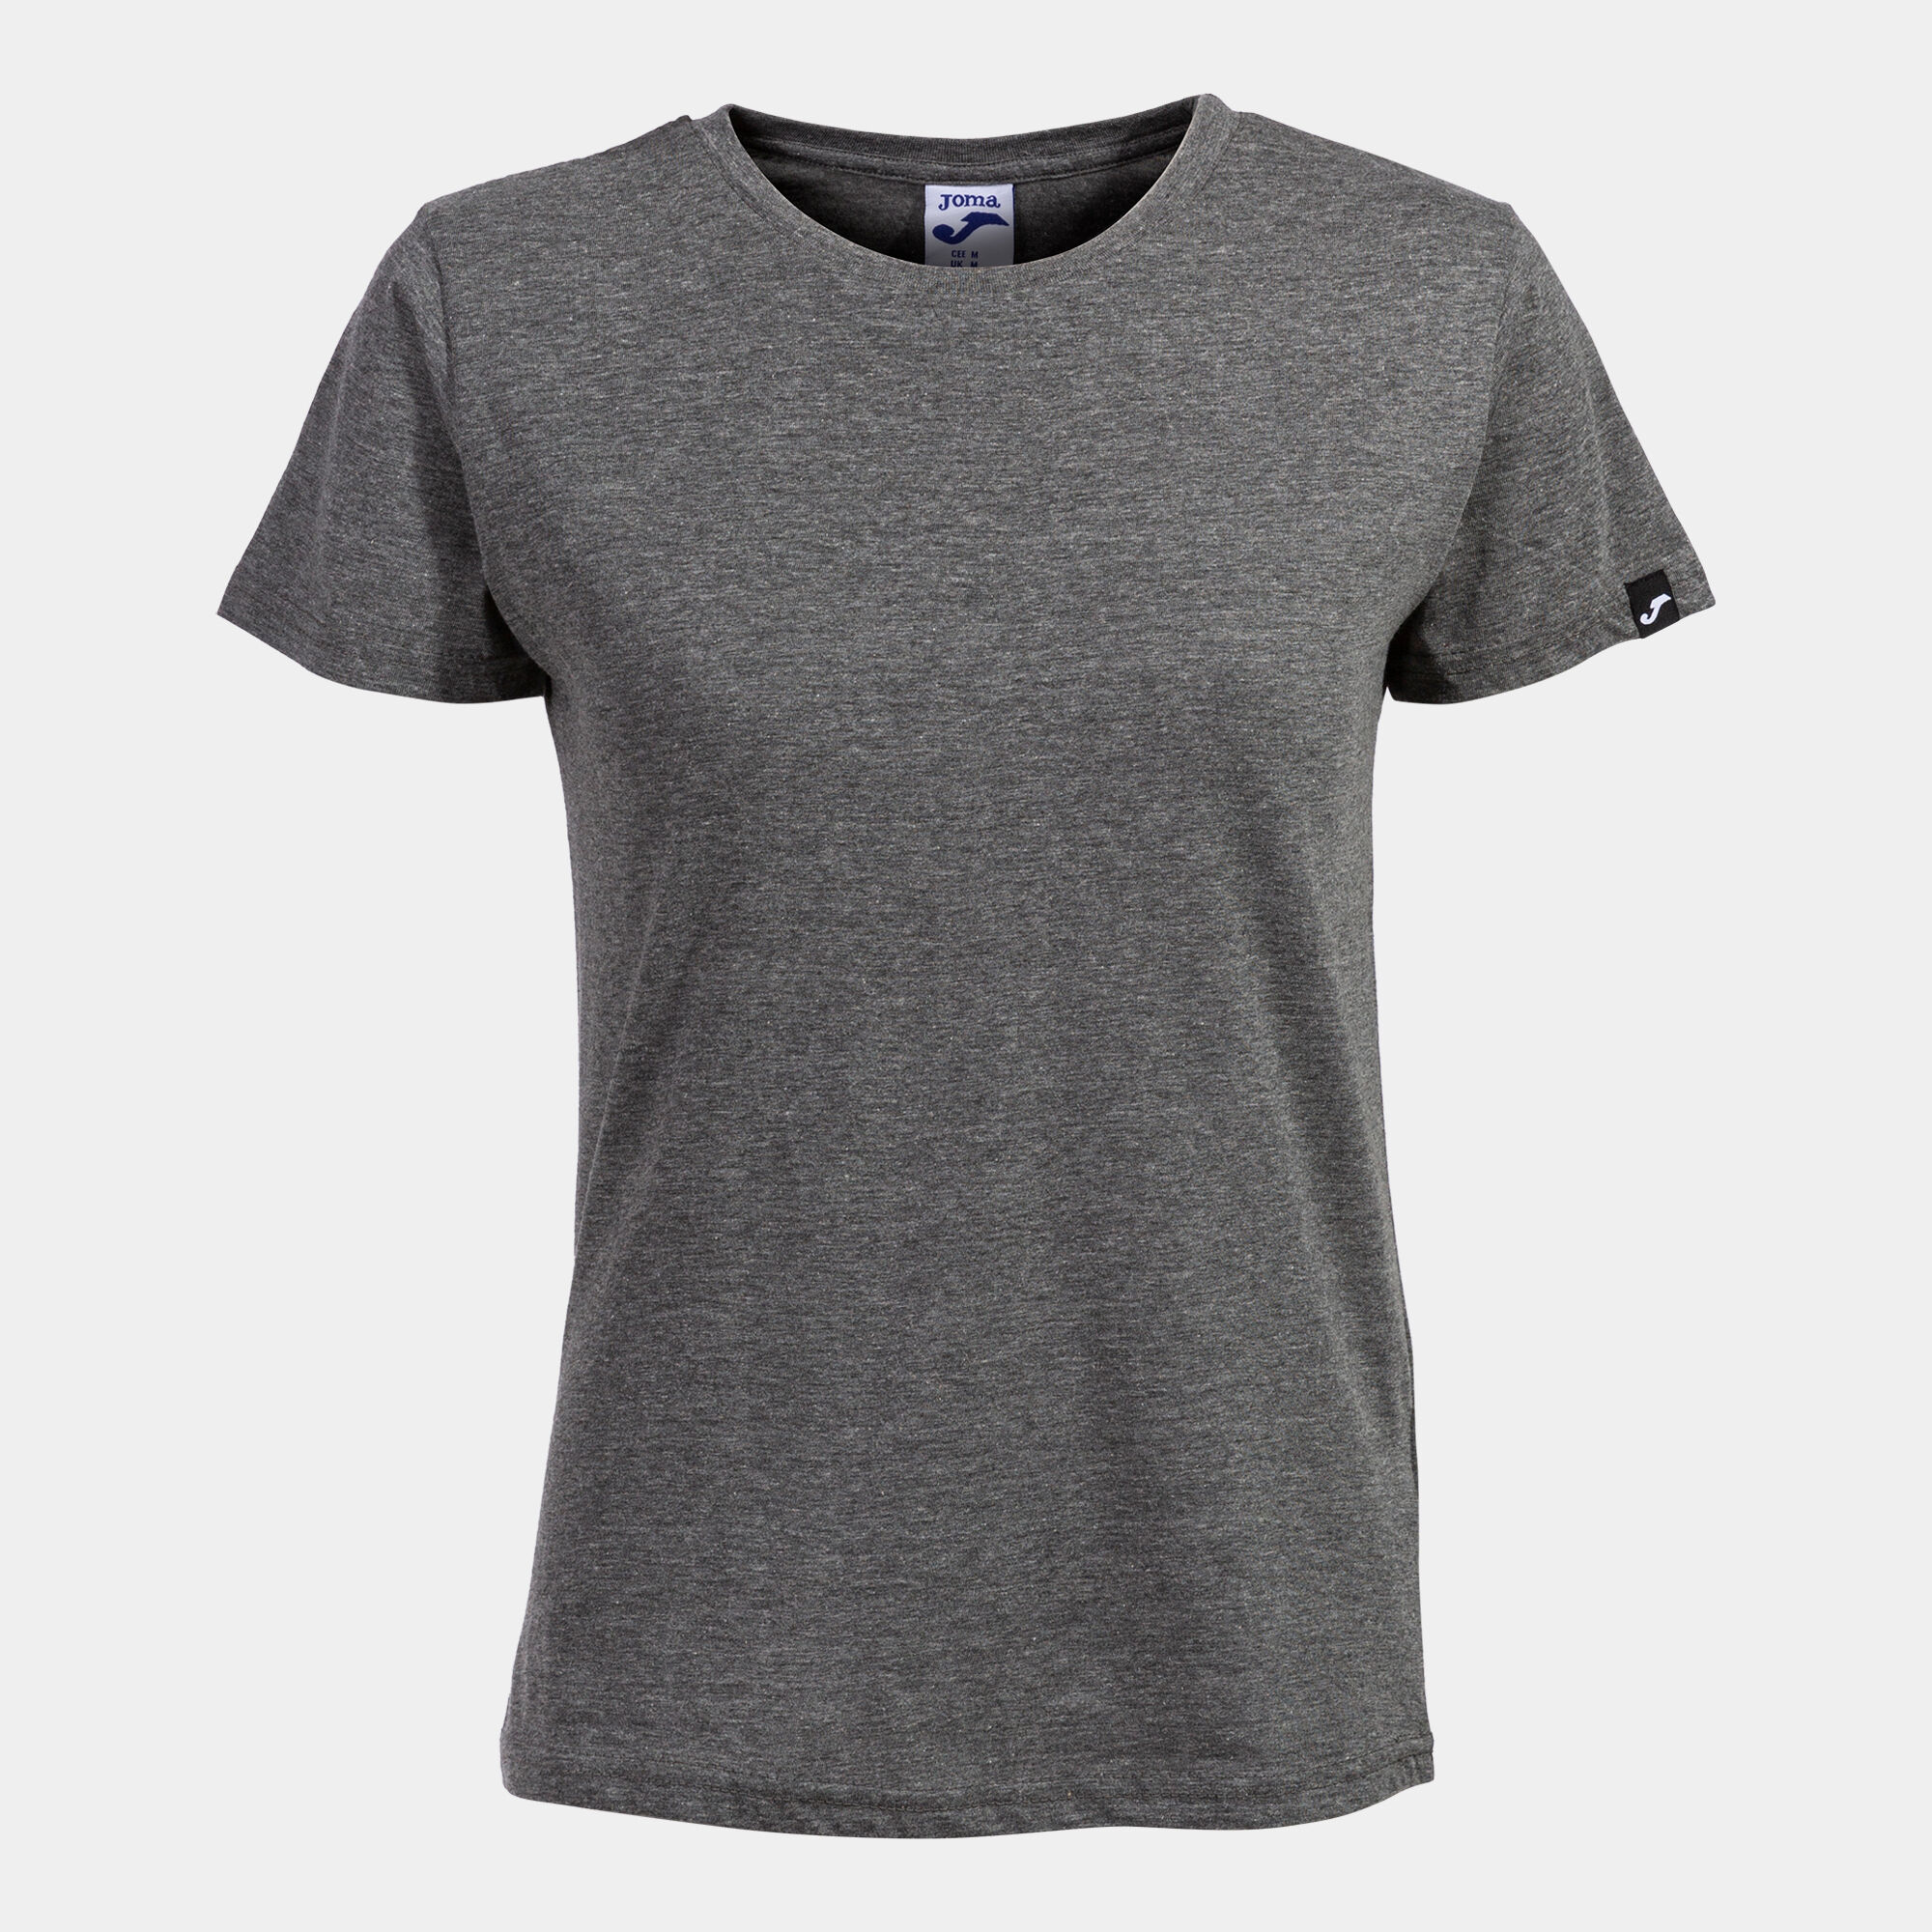 Shirt short sleeve woman Desert melange gray